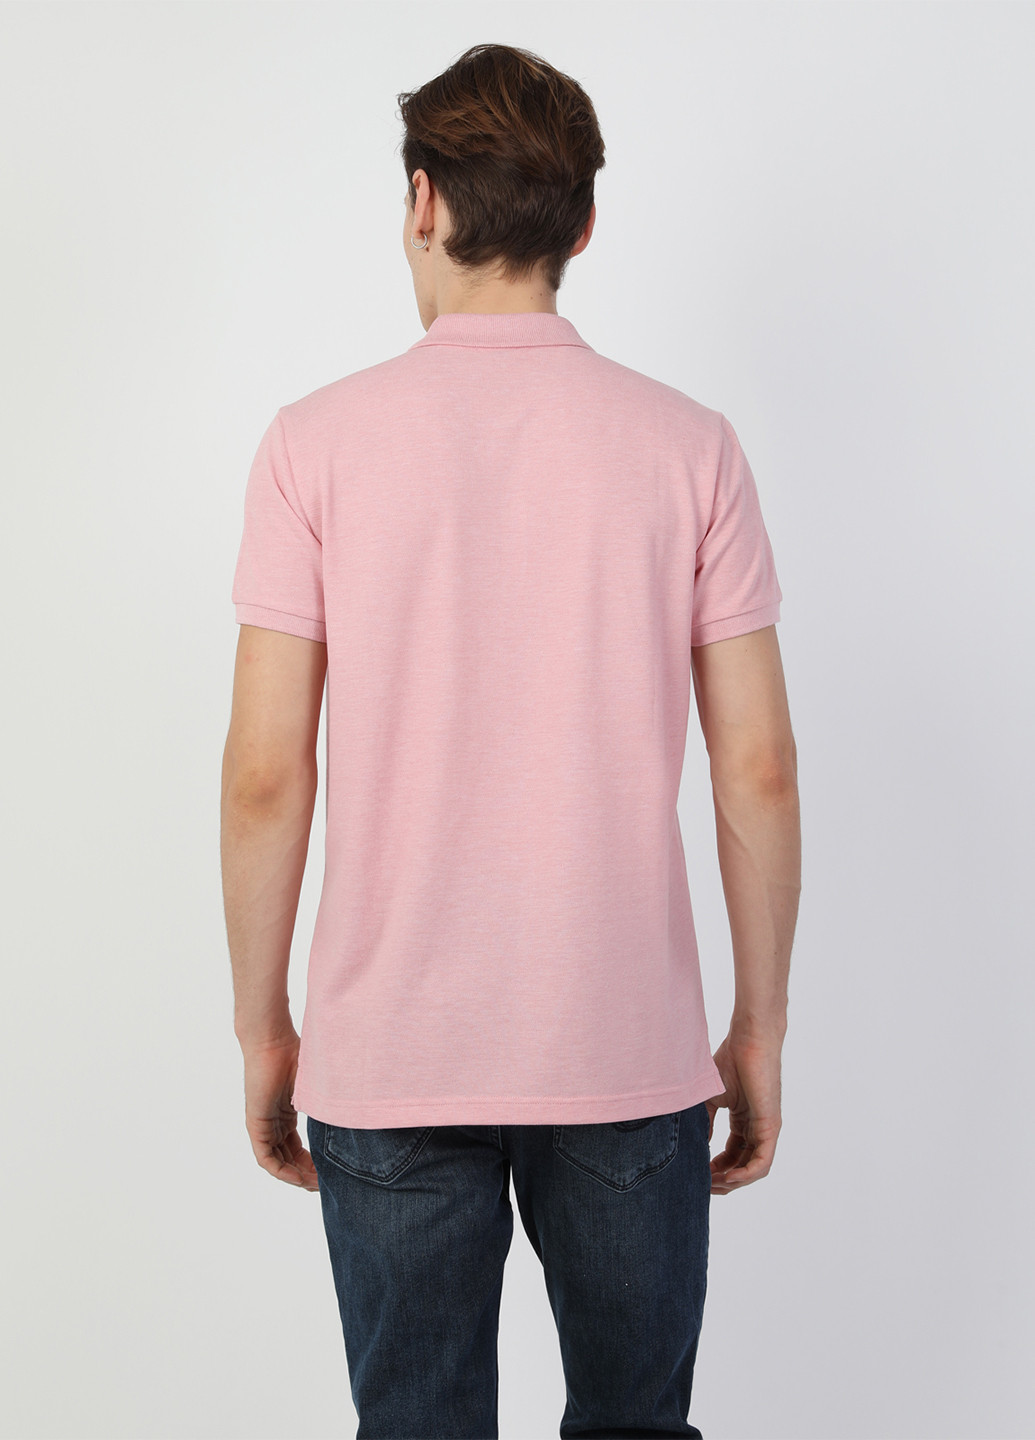 Розовая футболка-поло для мужчин Colin's меланжевая